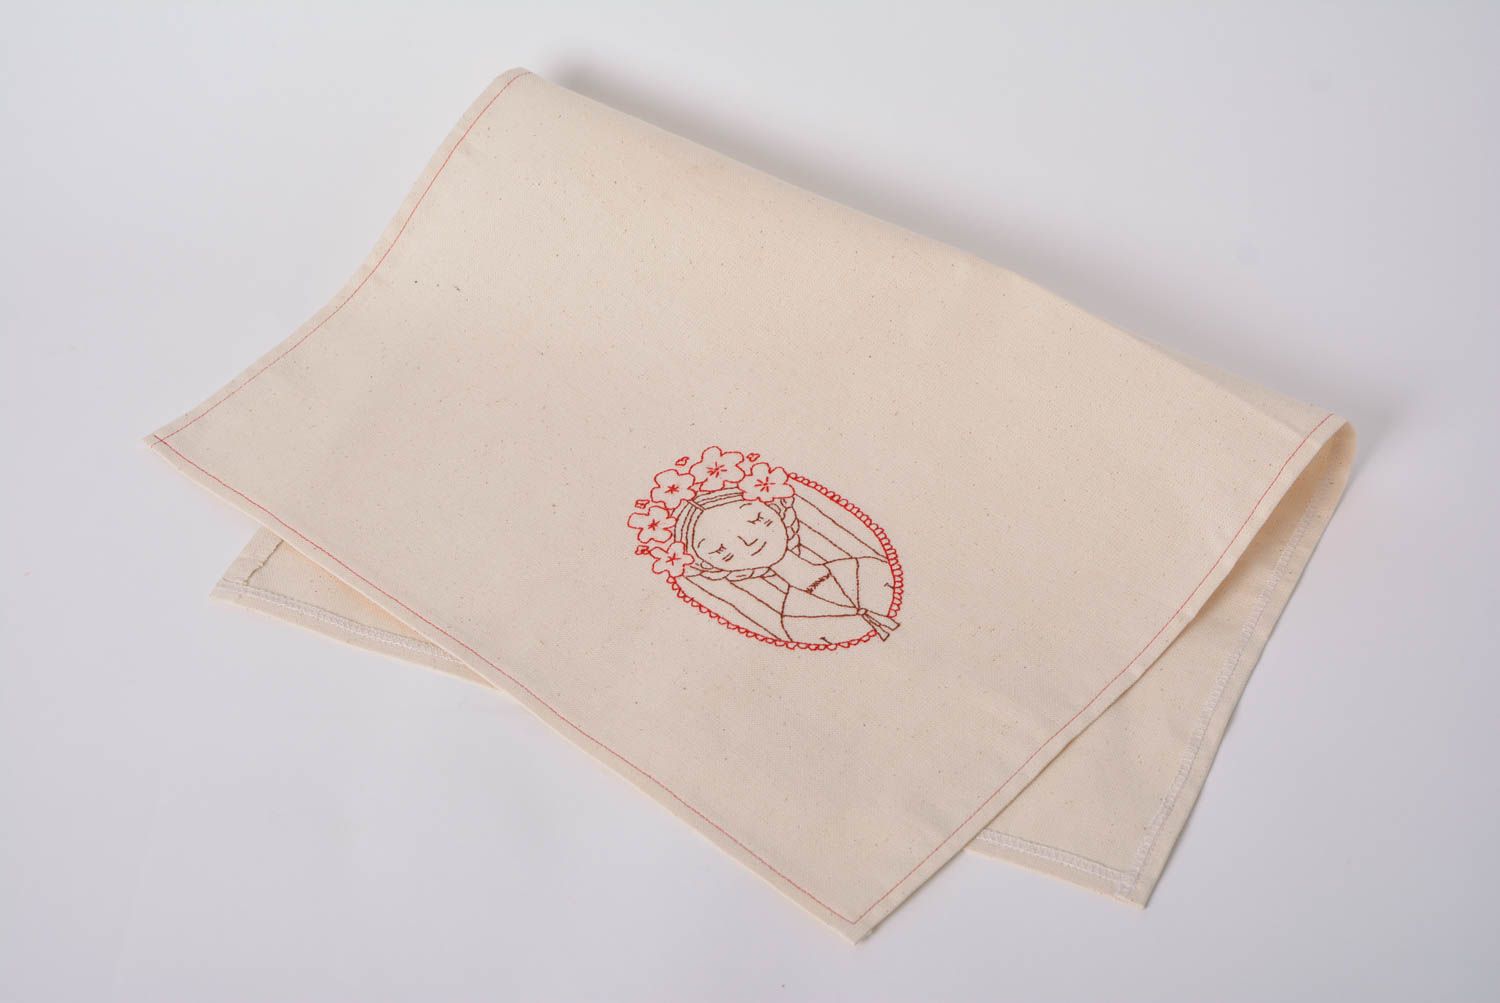 Тканевое полотенце из полульна ручной работы с ручной вышивкой оригинальное фото 1